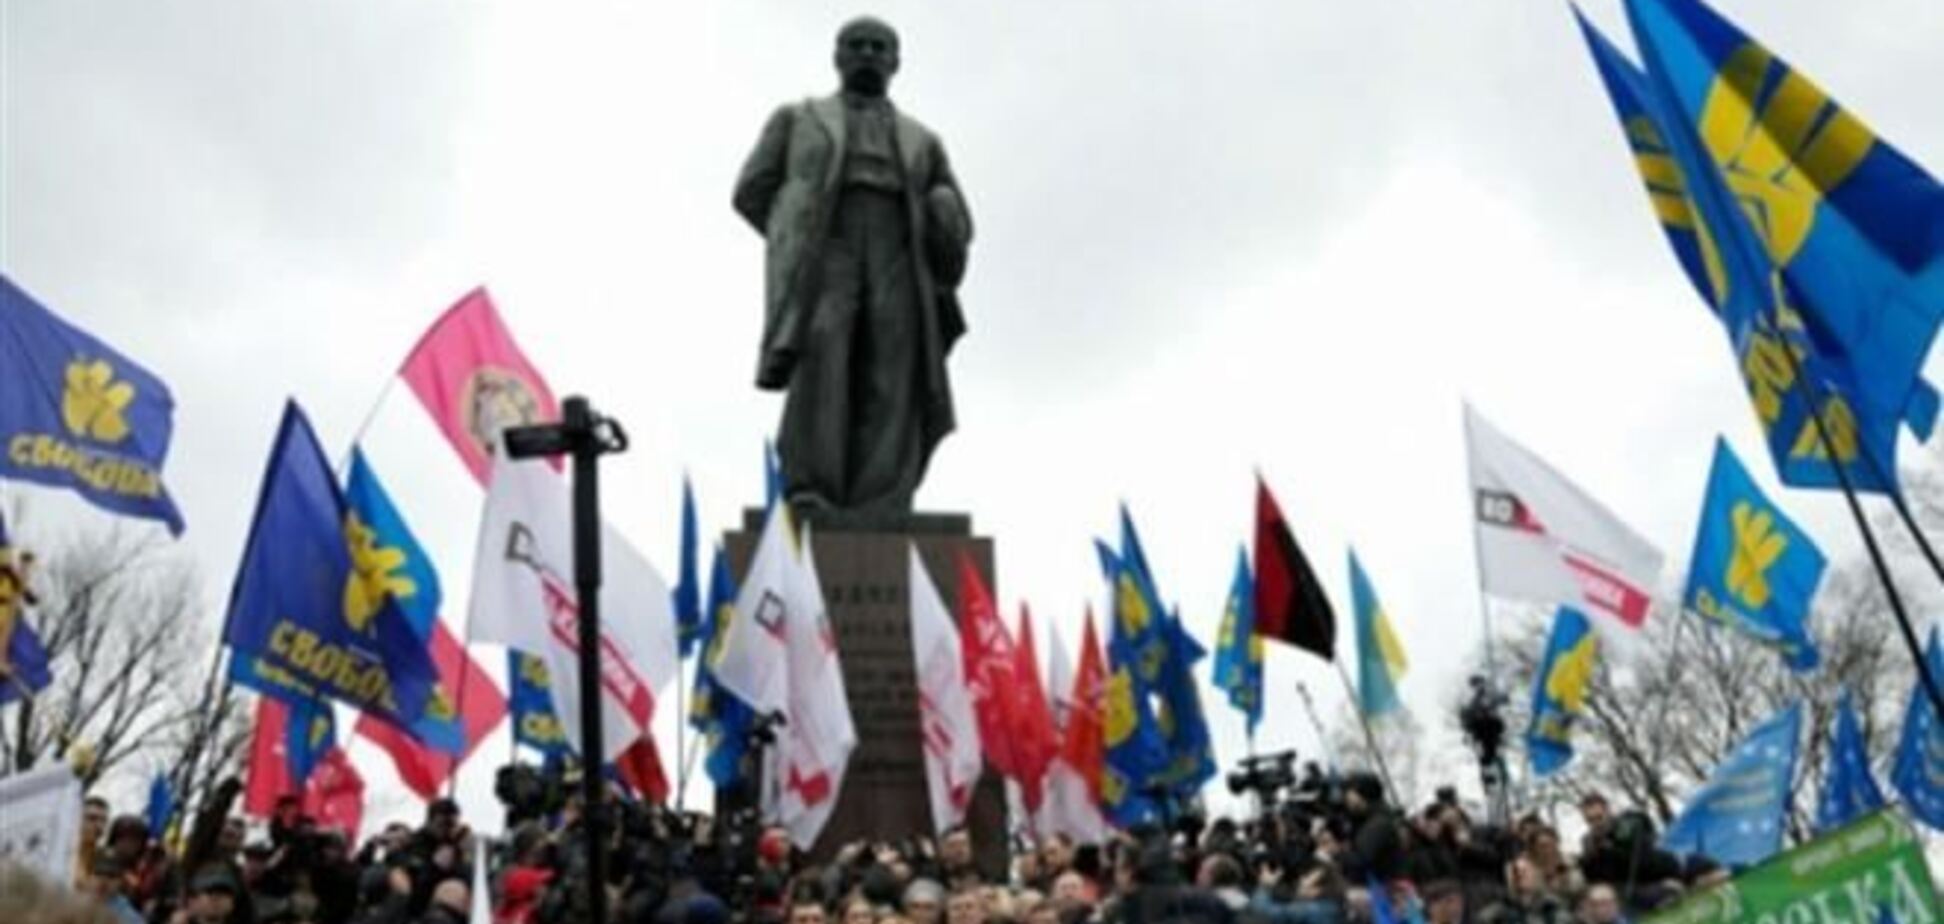 Оппозиция насчитала в парке Шевченко более 10 тыс. сторонников евроинтеграции